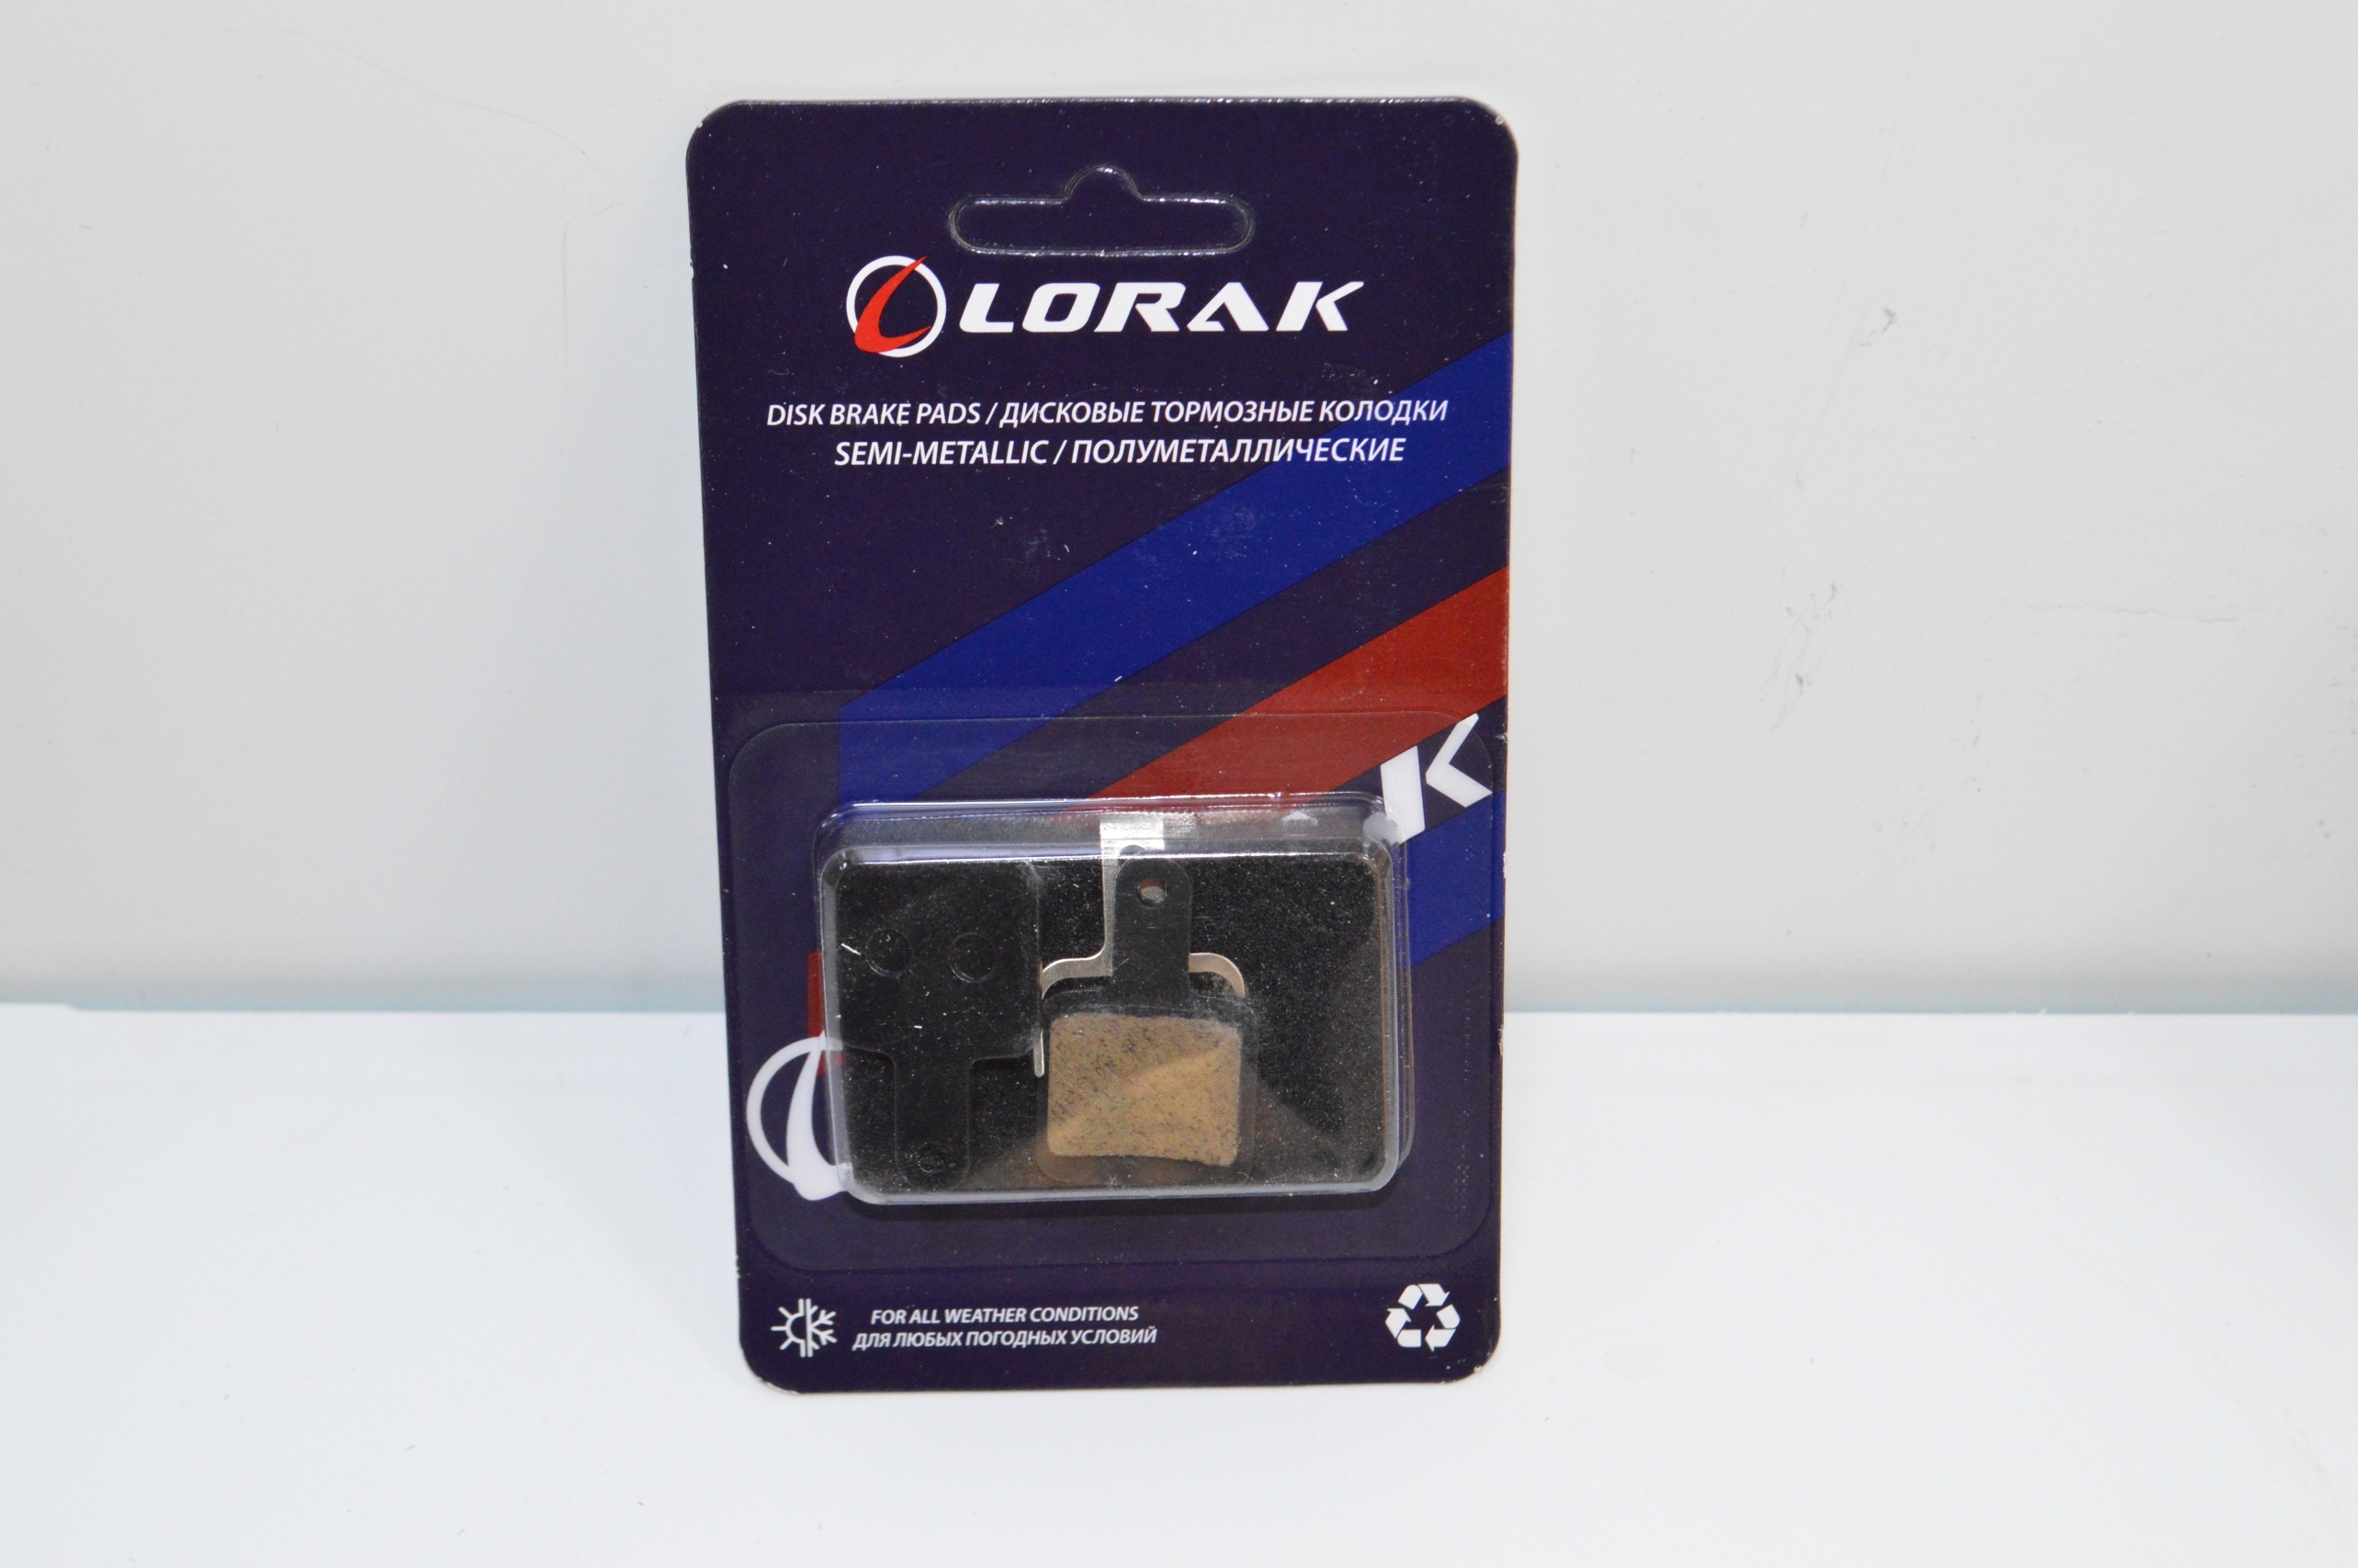 Колодка для диска Lorak P-18, код 40947